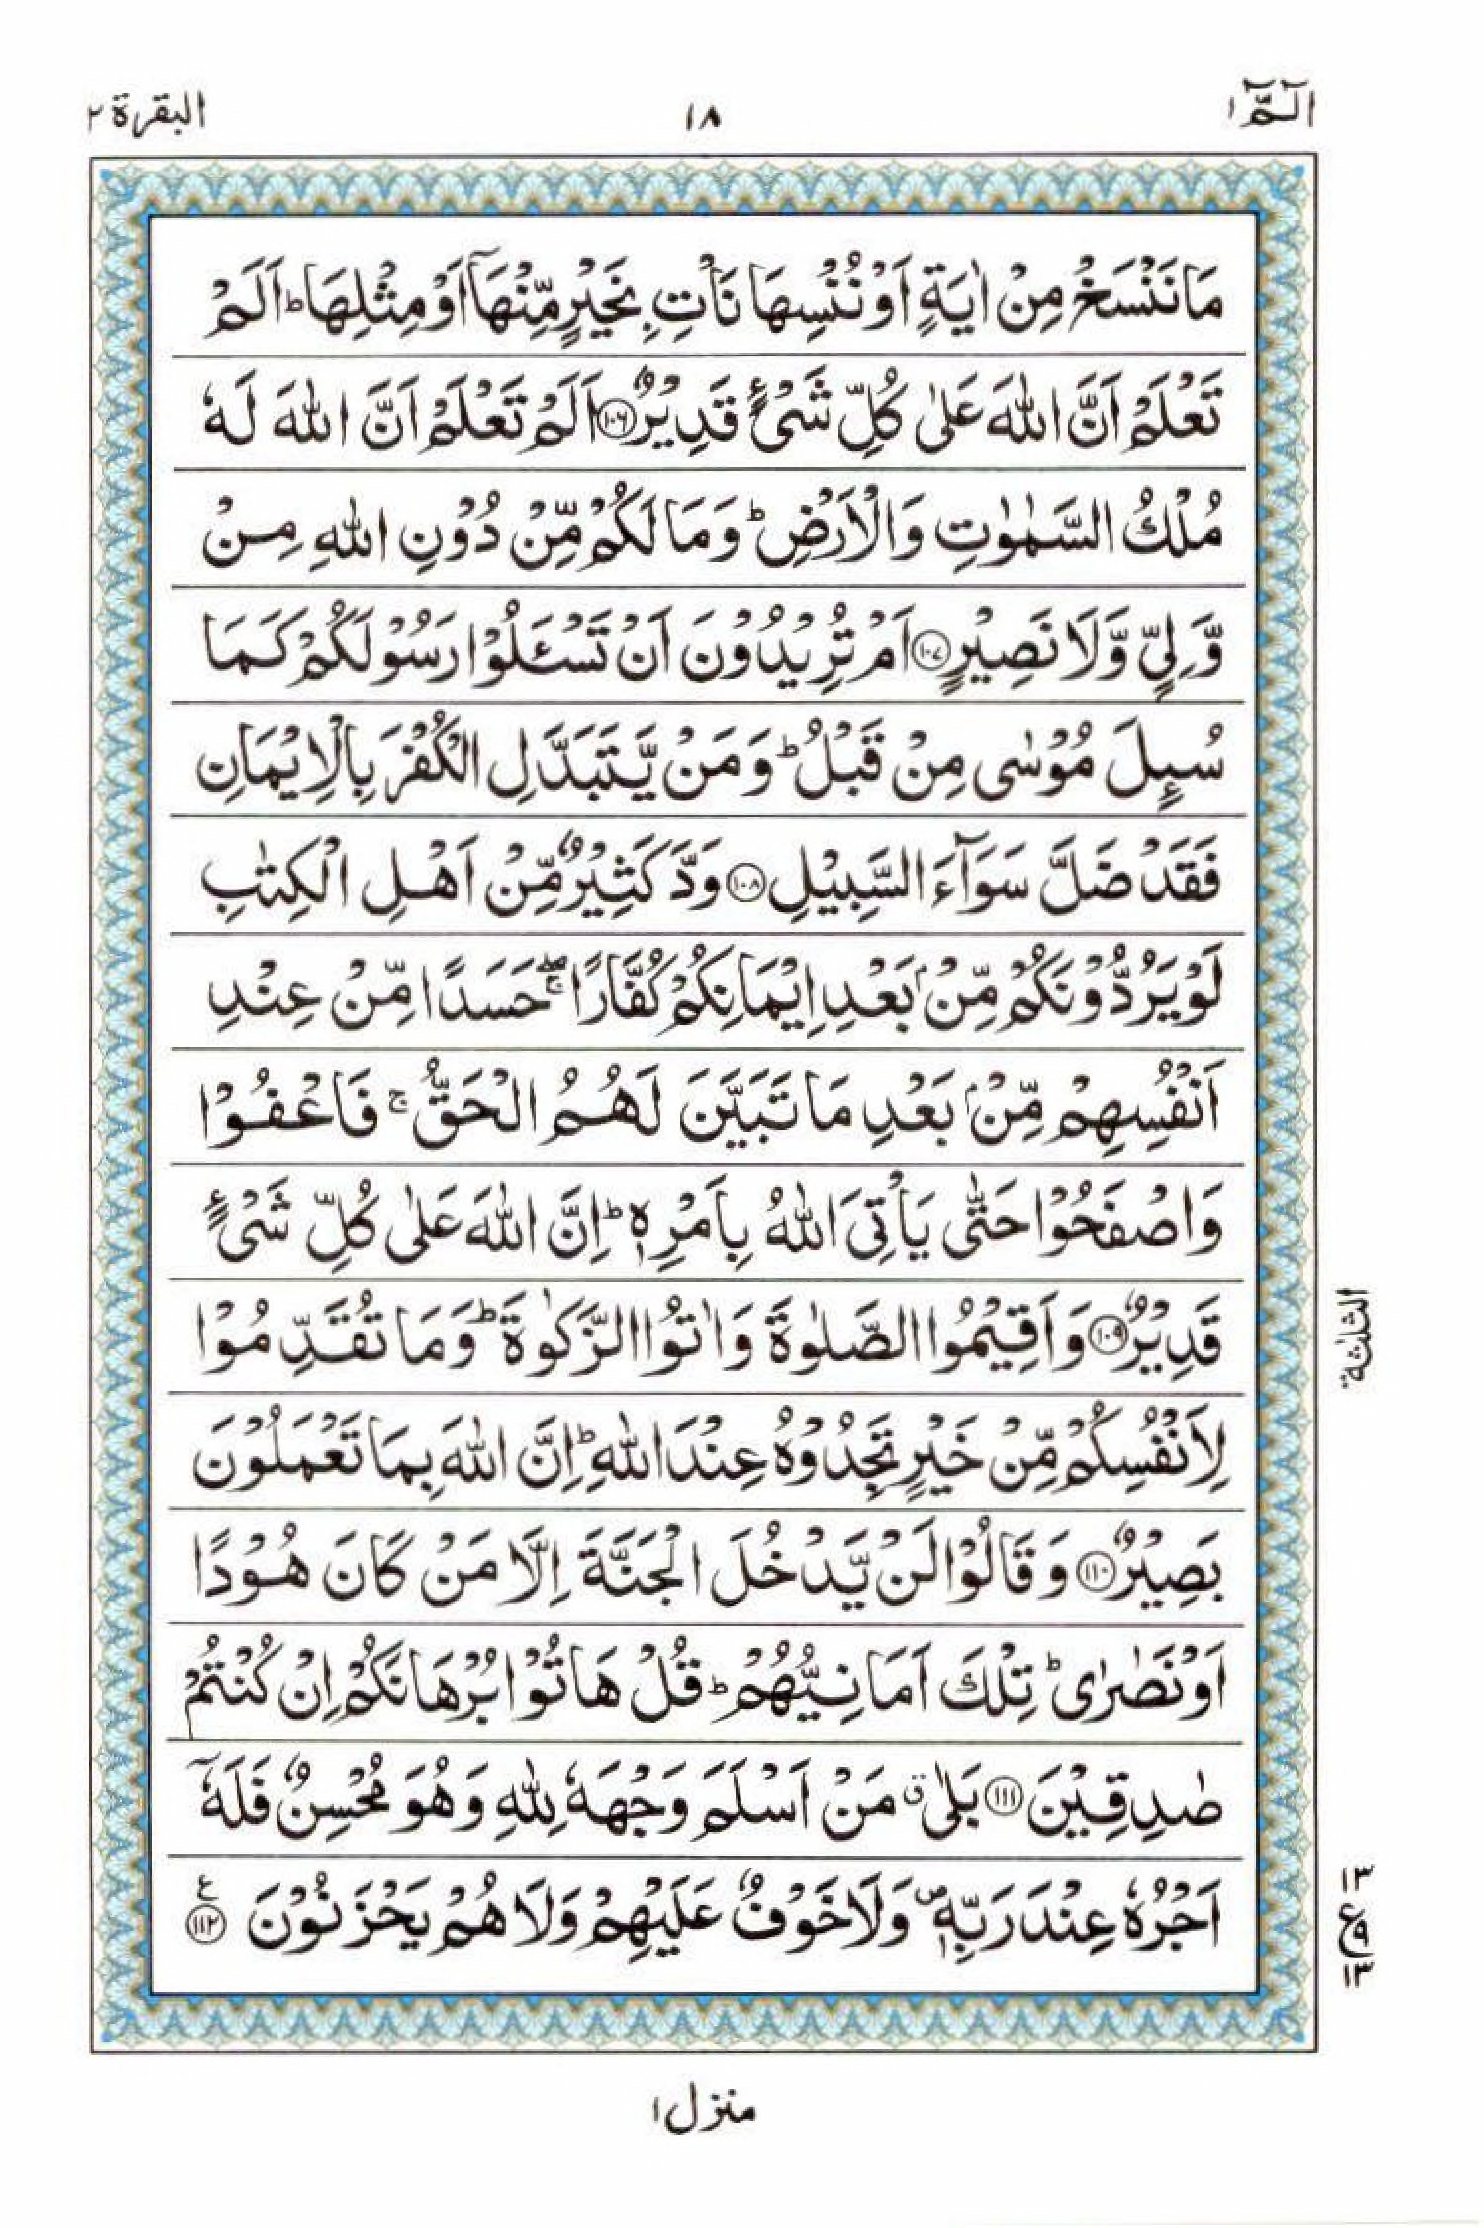 Read 15 Lines Al Quran Part 1 Page No 18, Practice Quran